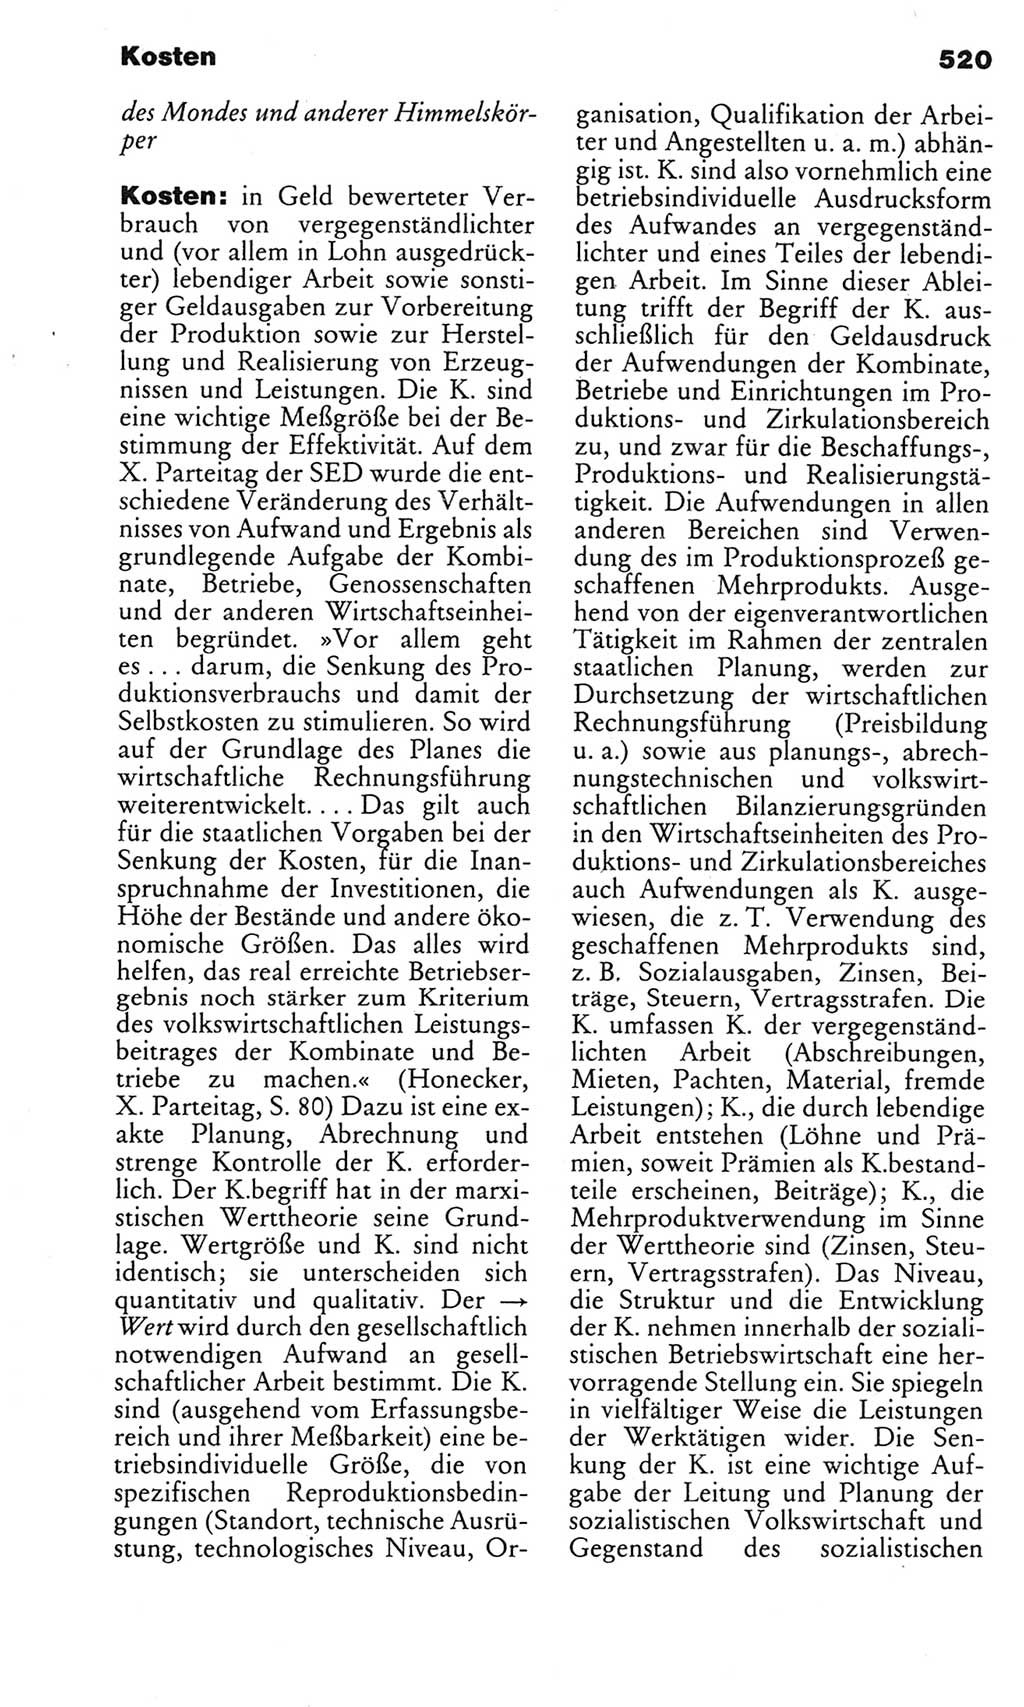 Kleines politisches Wörterbuch [Deutsche Demokratische Republik (DDR)] 1983, Seite 520 (Kl. pol. Wb. DDR 1983, S. 520)